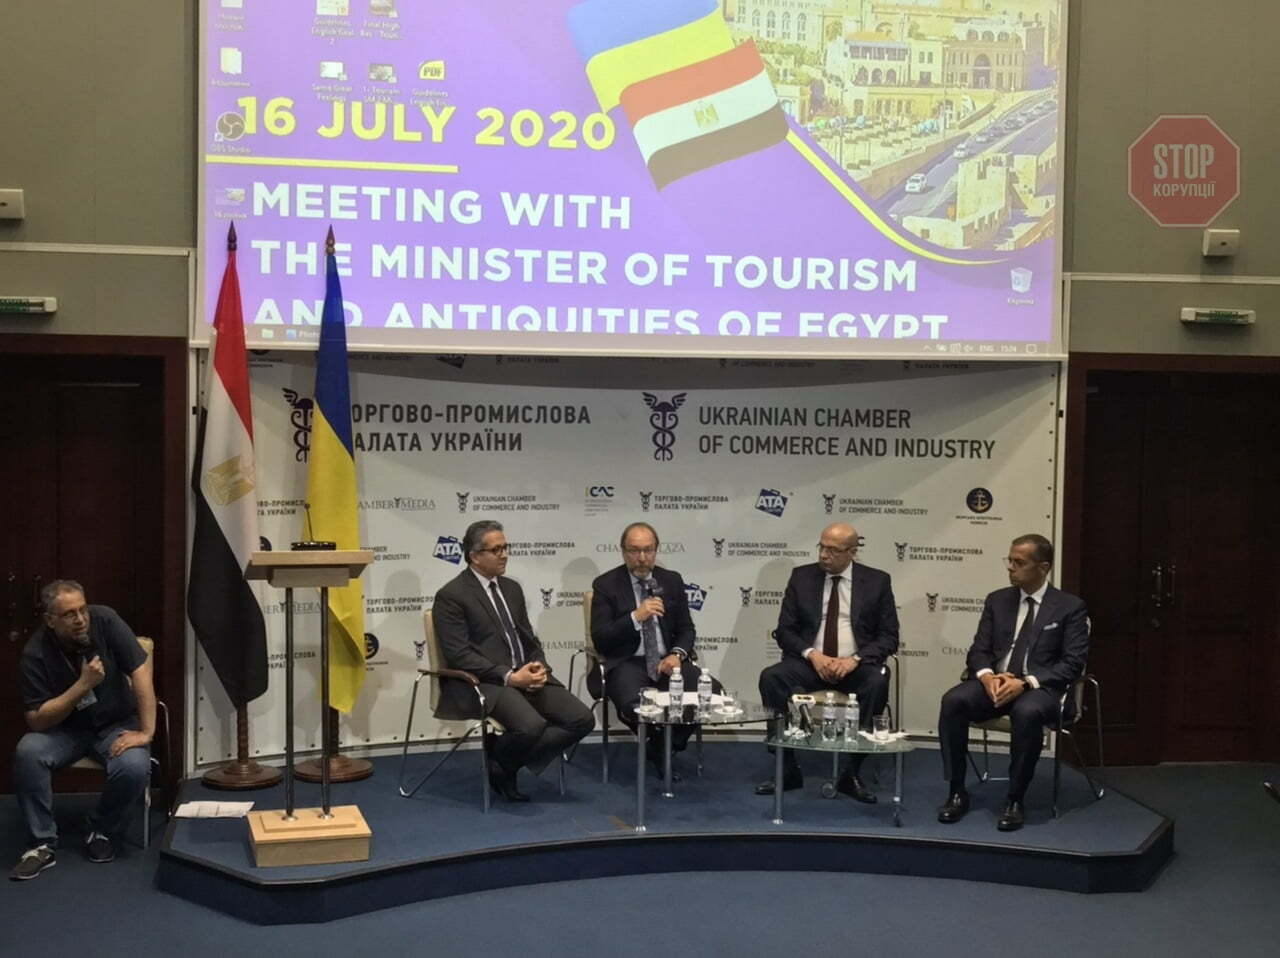  Пресконференція з міністром туризму Єгипту Фото: СтопКор»